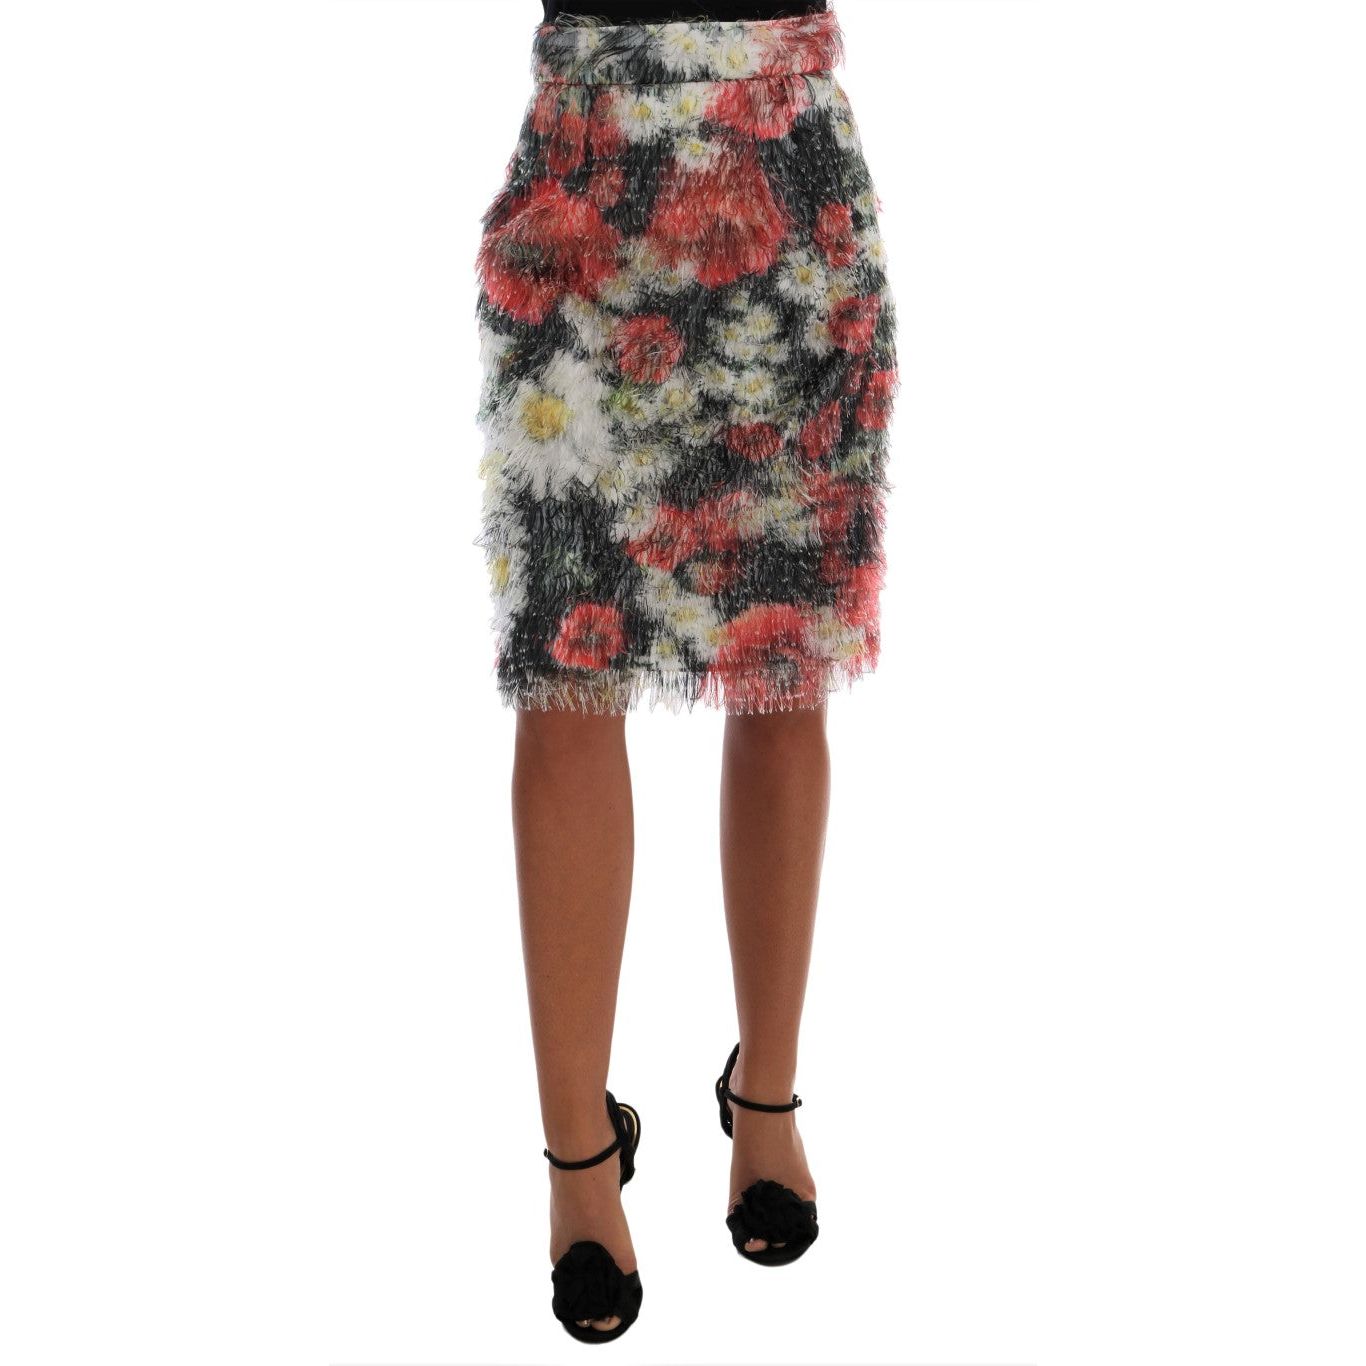 Dolce & Gabbana Floral Elegance Knee-Length Skirt floral-patterned-pencil-straight-skirt 464288-floral-patterned-pencil-straight-skirt.jpg